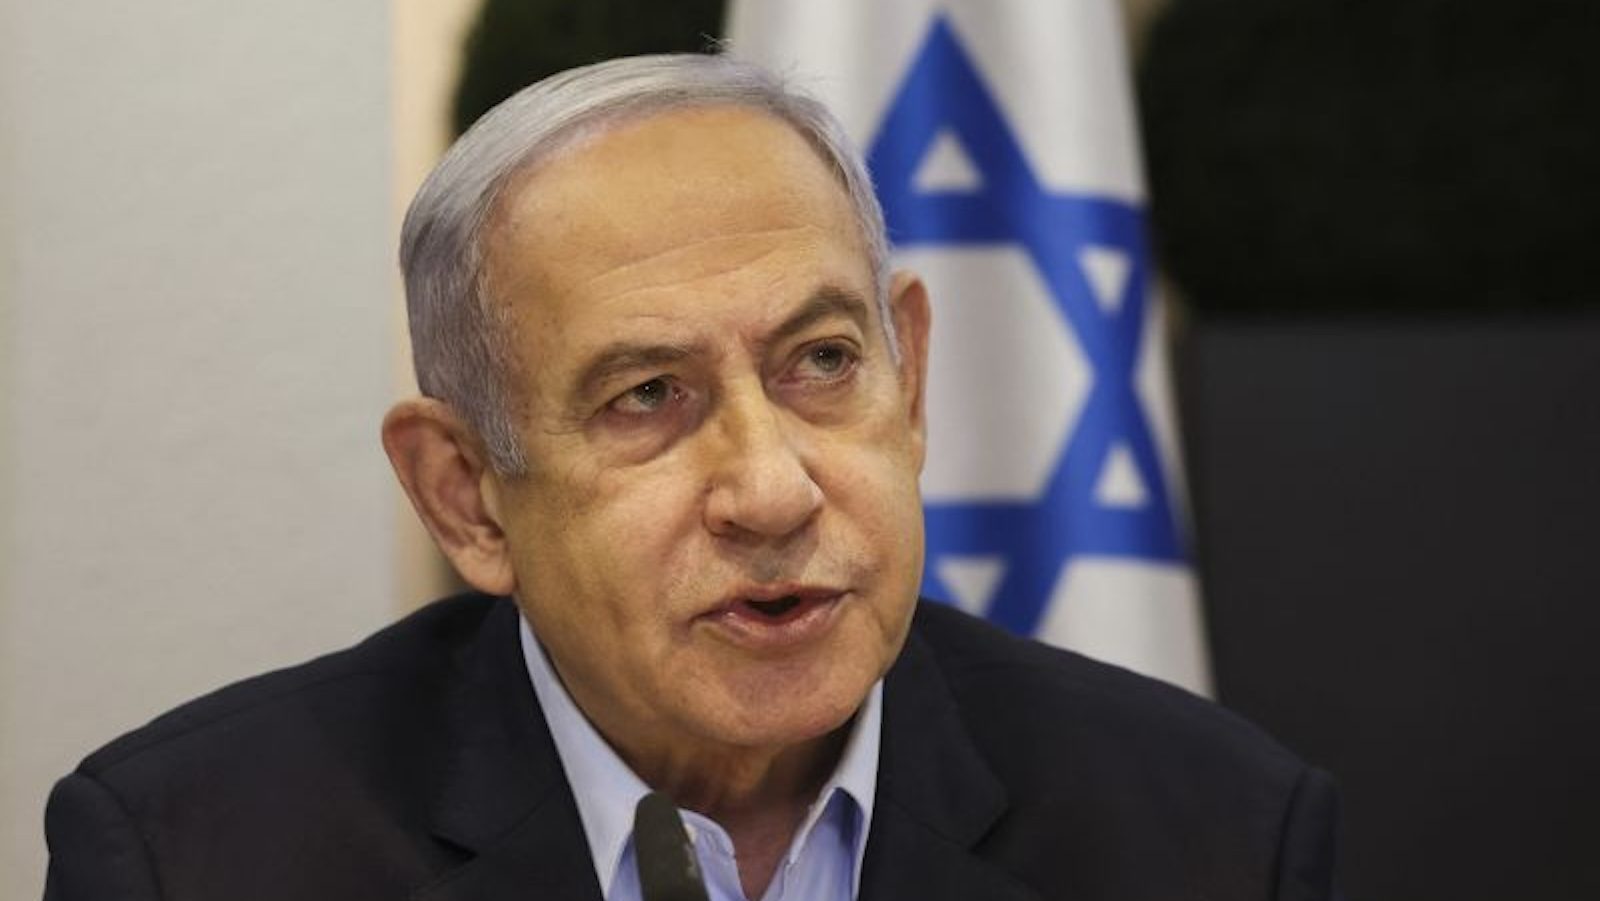 Netanyahu sekali lagi menolak kedaulatan Palestina di tengah upaya baru Amerika untuk mencapai solusi dua negara